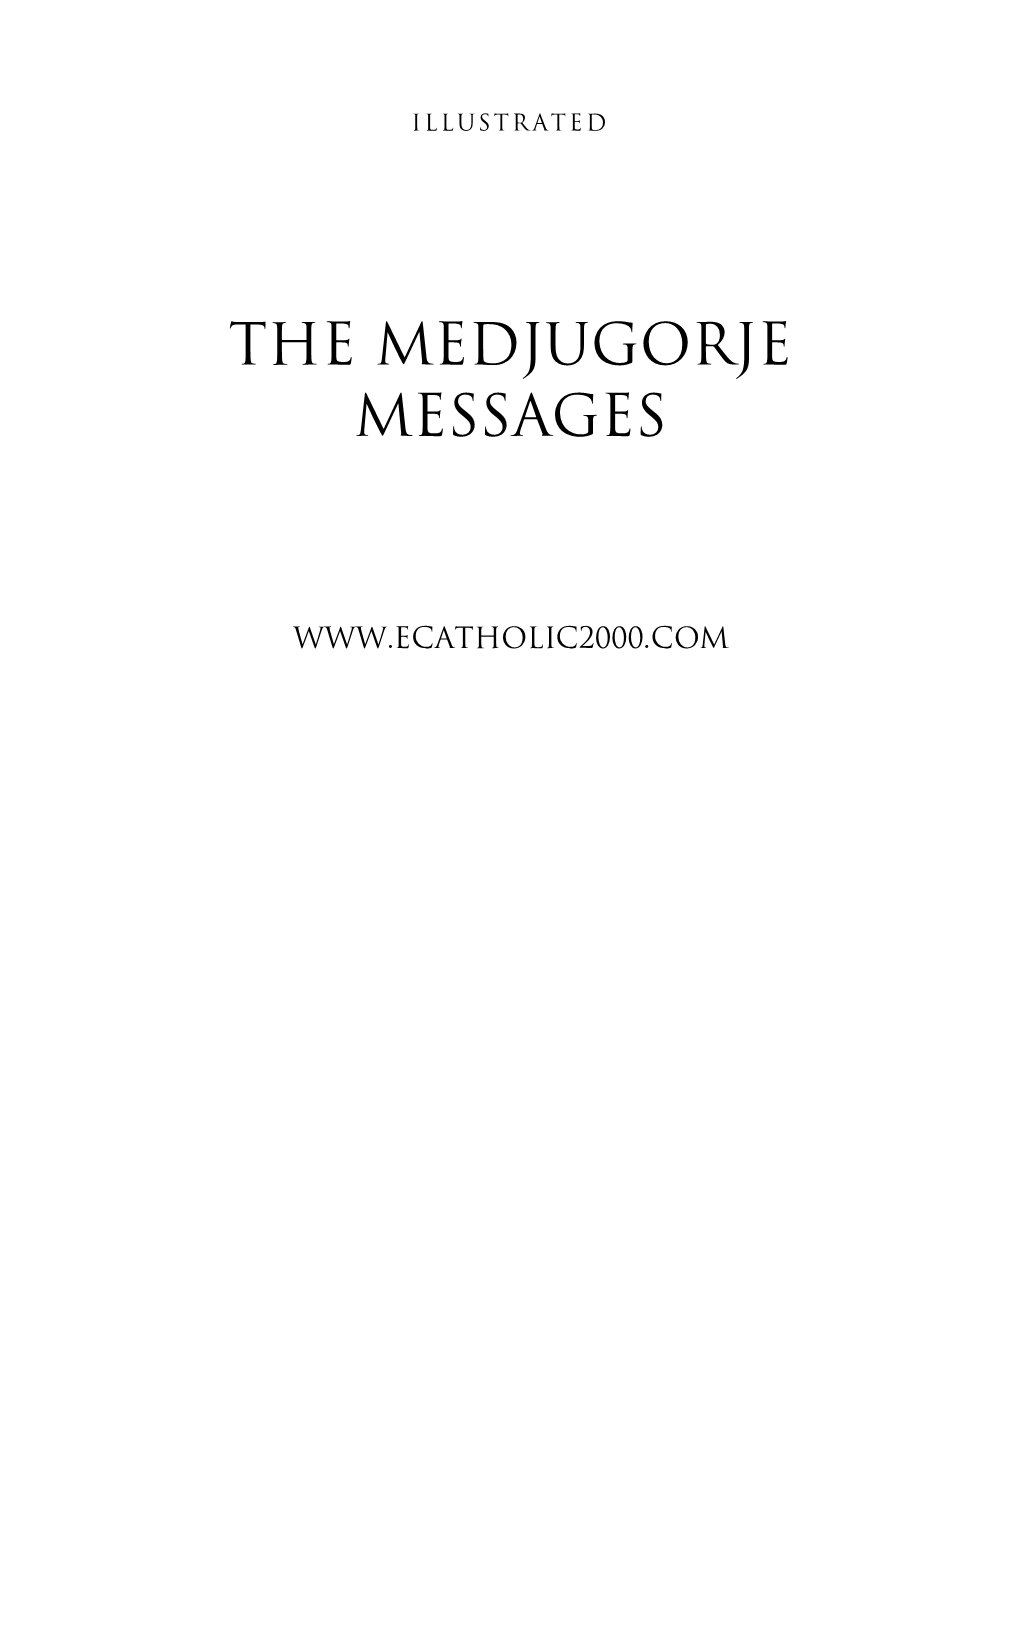 The Medjugorje Messages